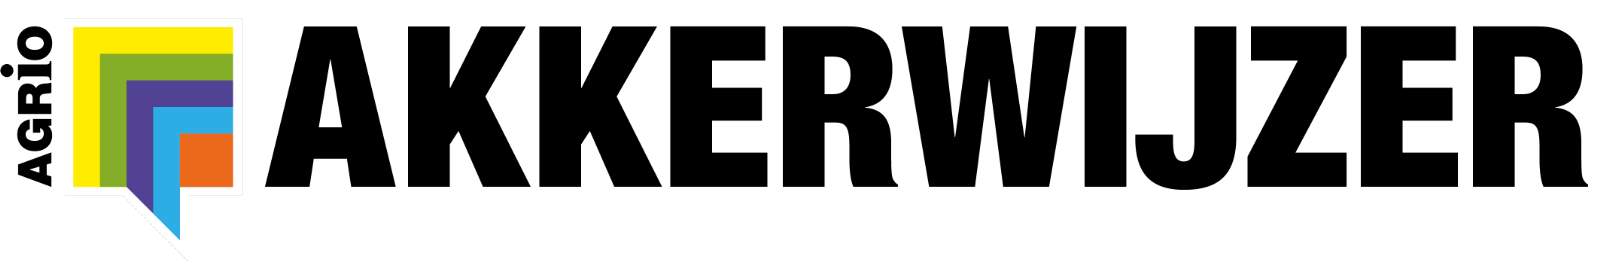 Akkerwijzer logo